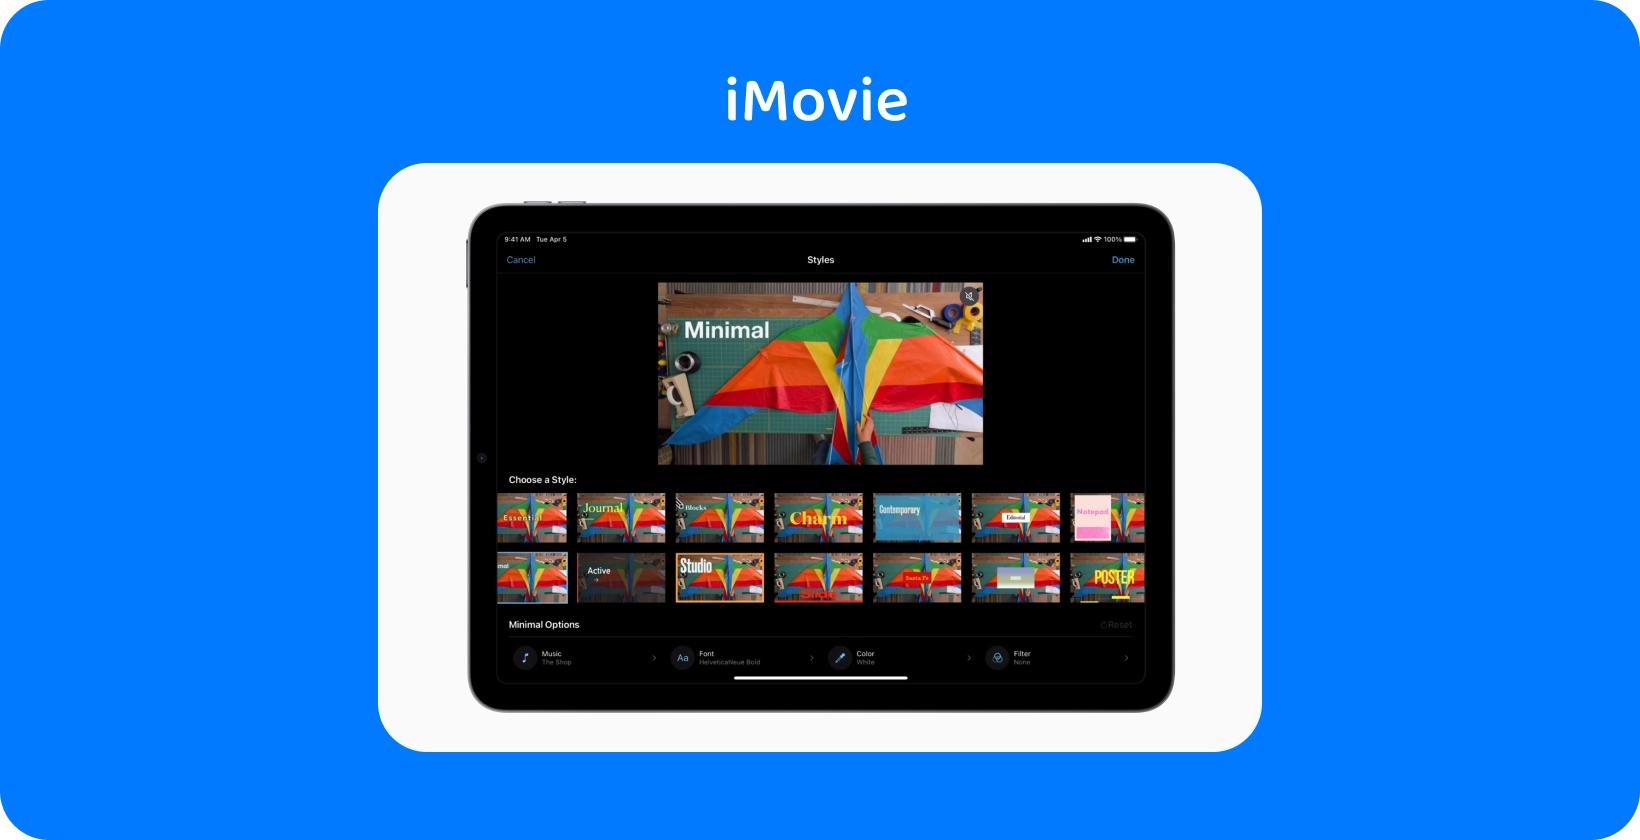 iMovie विभिन्न वीडियो संपादन शैलियों को प्रदर्शित करने वाले टैबलेट पर रखें, जिसमें एक रंगीन पतंग परियोजना 'मिनिमल' थीम पर सेट हो।